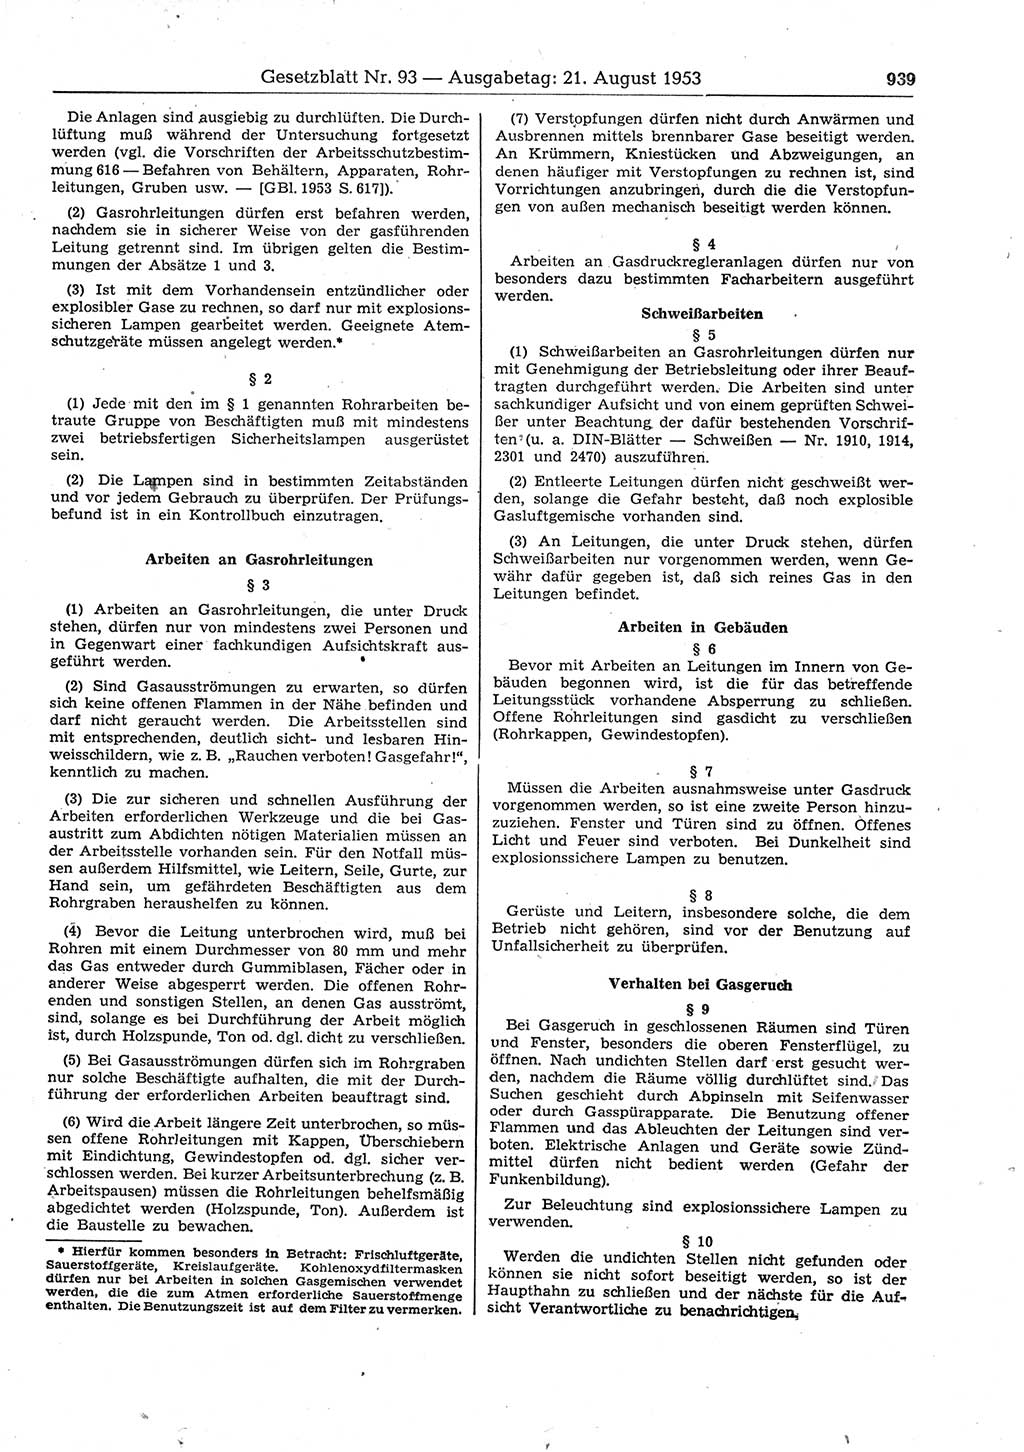 Gesetzblatt (GBl.) der Deutschen Demokratischen Republik (DDR) 1953, Seite 939 (GBl. DDR 1953, S. 939)